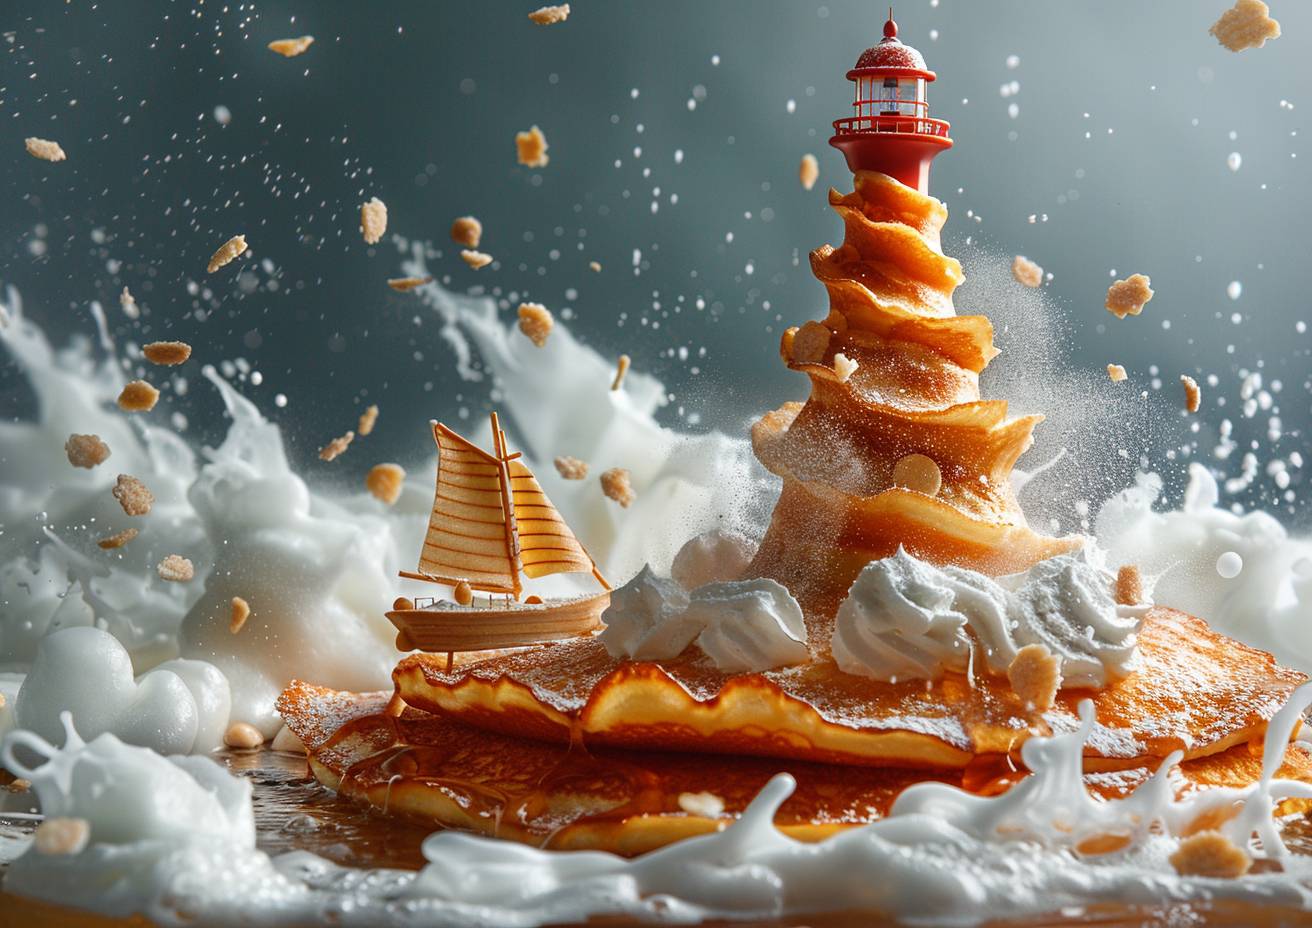 シュールな食品写真のスタイルで、パンケーキから形成された灯台、ネームシップの船が糖蜜の海に浮かぶ、砂糖粉、強いビジュアルフロー。